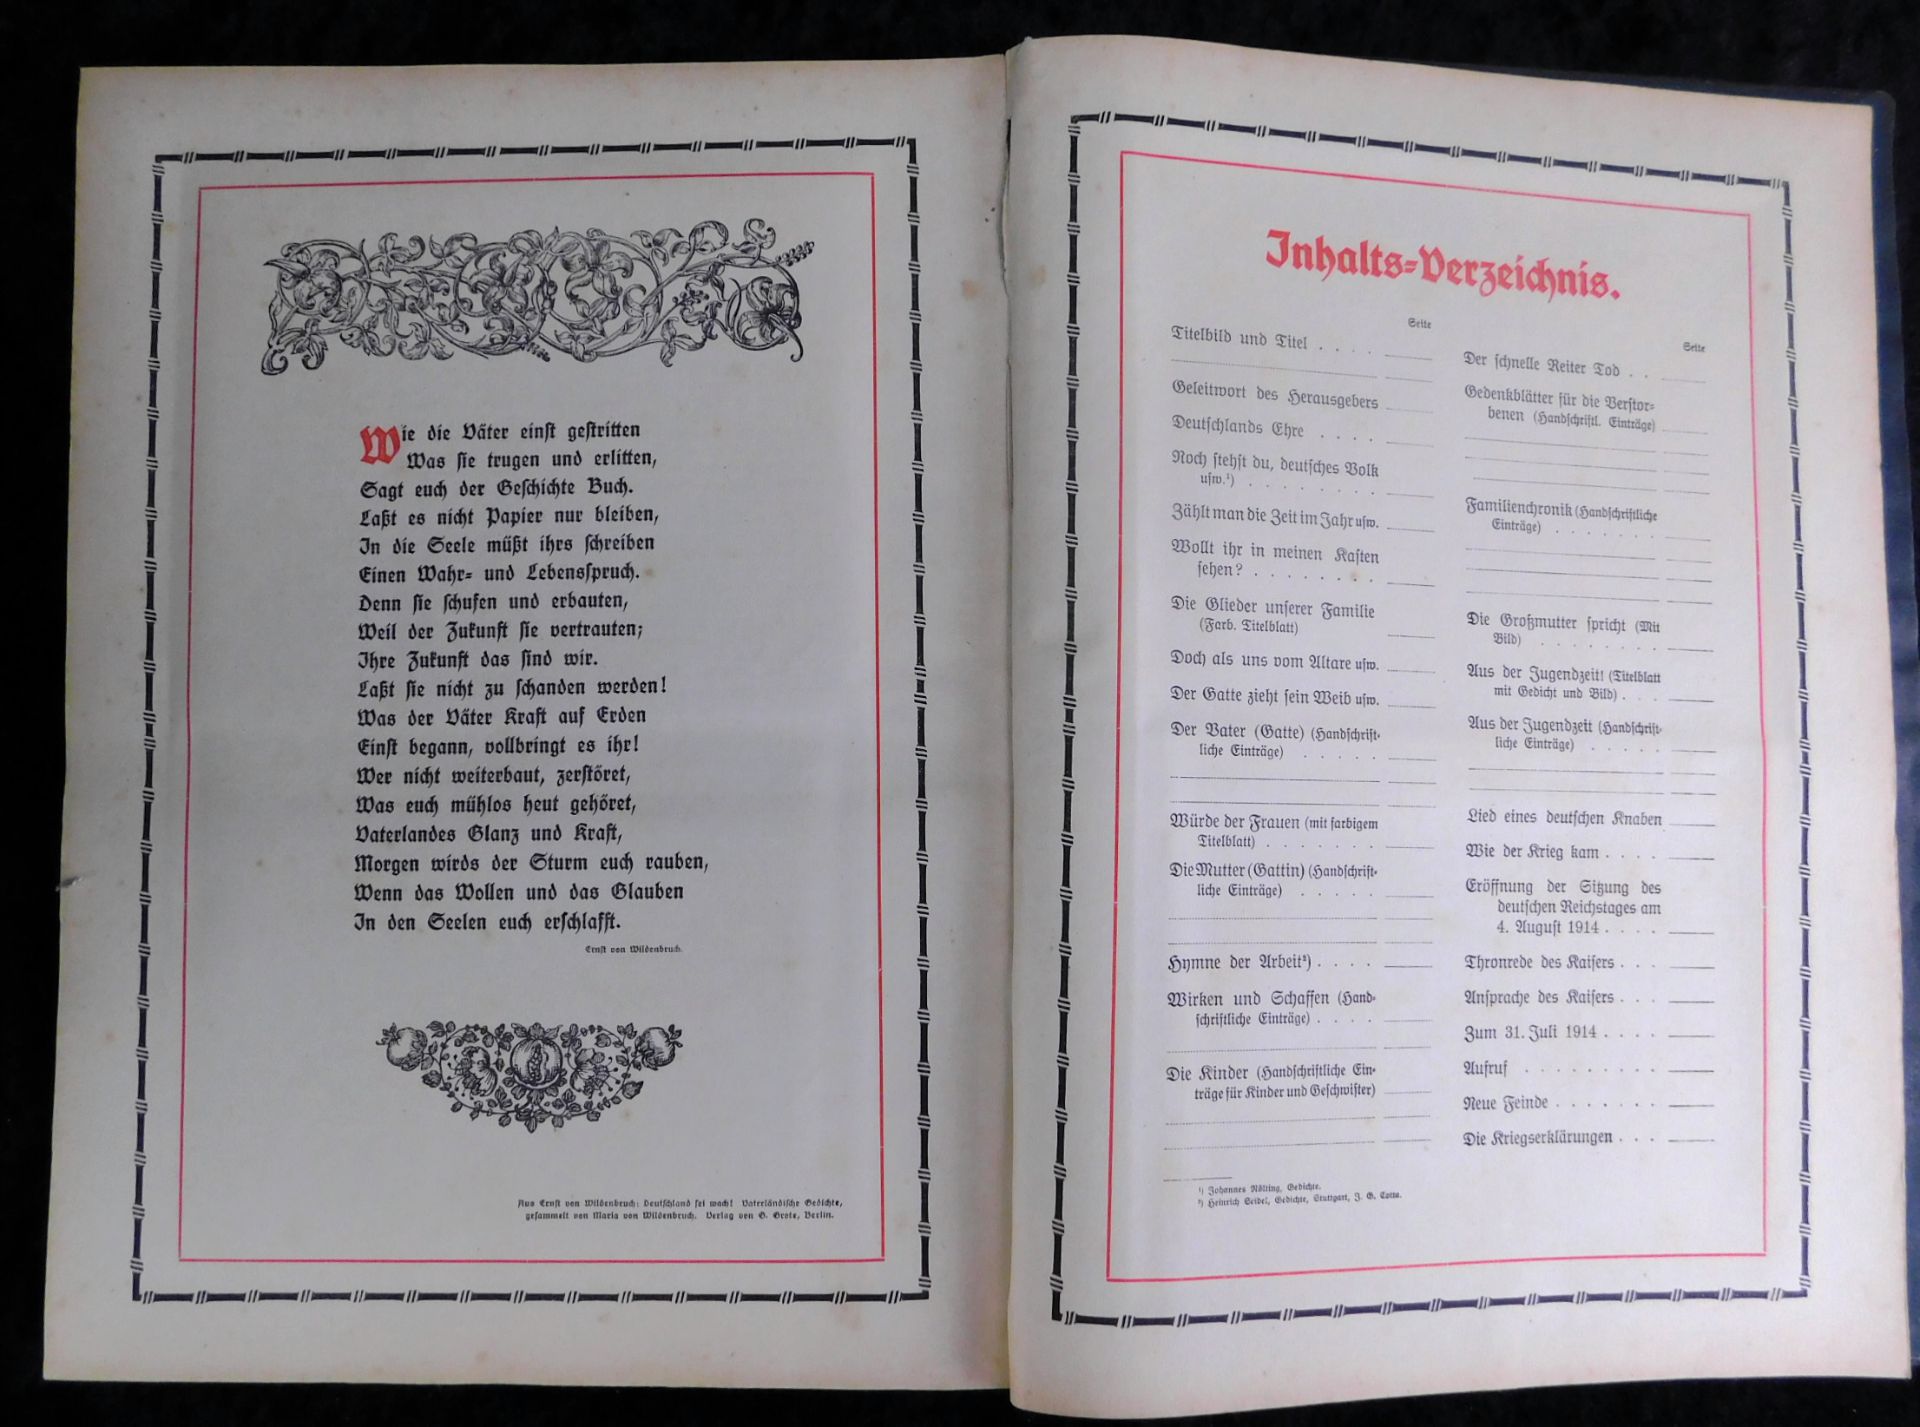 Großes Ehrenbuch 1914, Familienstammbuch, Verlag Joh.E.Hubens, Diessen/München - Bild 6 aus 7